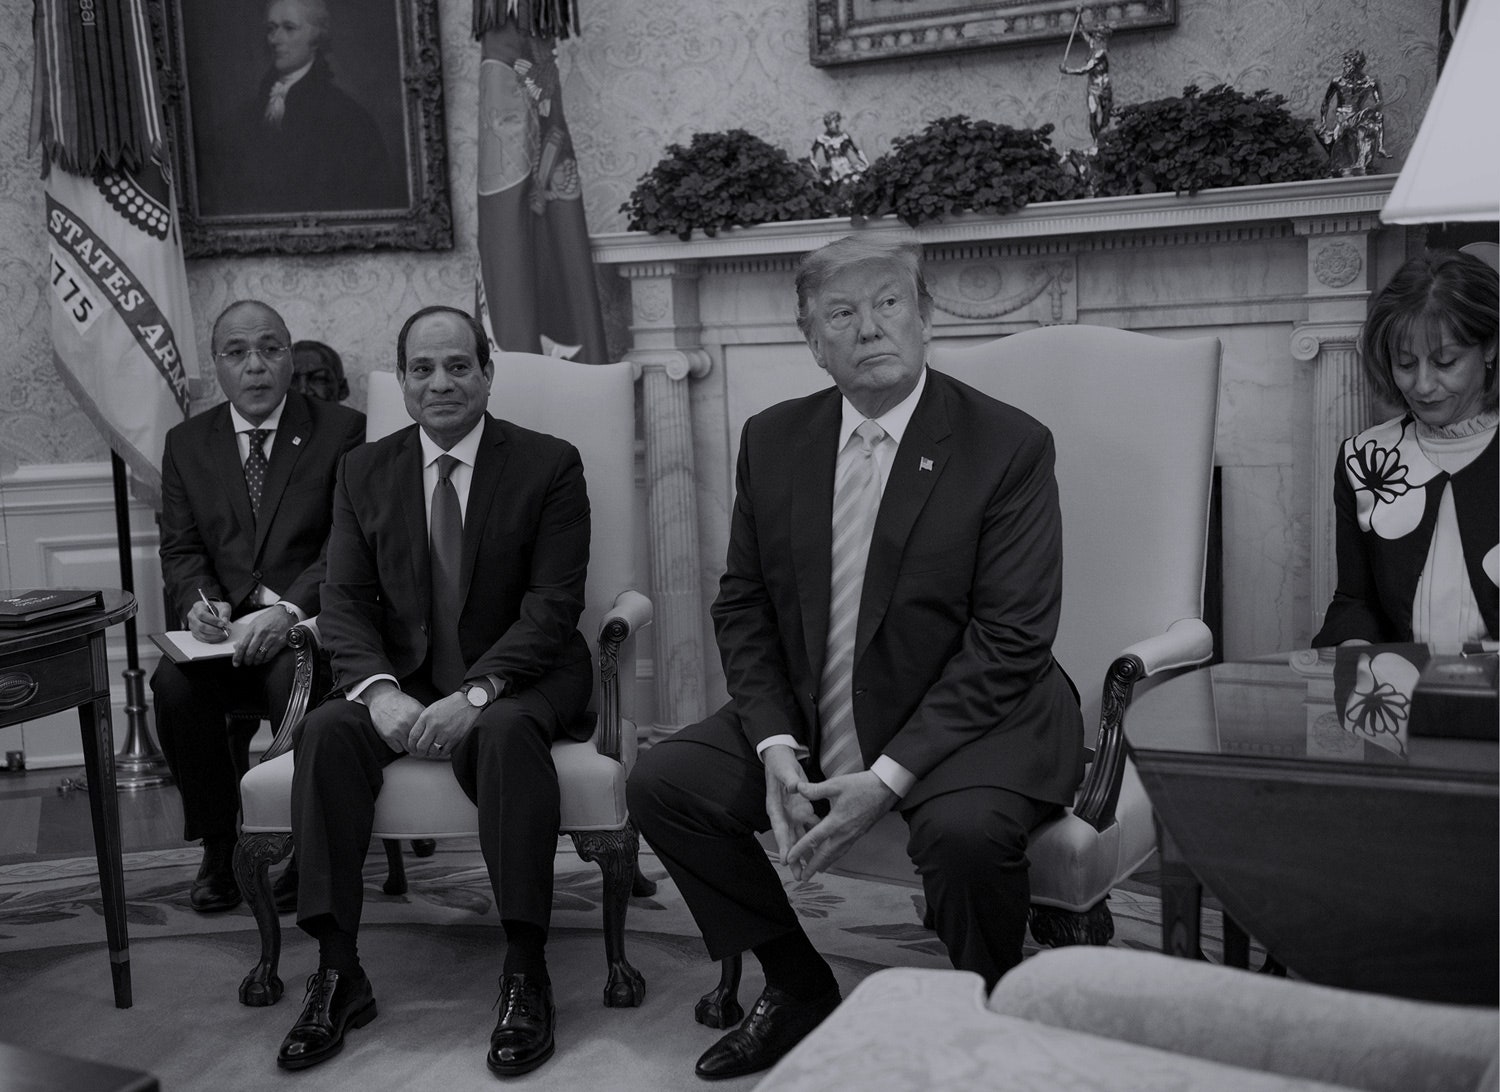 O presidente dos EUA, Donald Trump (segundo à direita), e o presidente egípcio Abdel Fattah As-Sisi (segundo à esquerda) estão sentados durante uma reunião em uma reunião no Twitter.